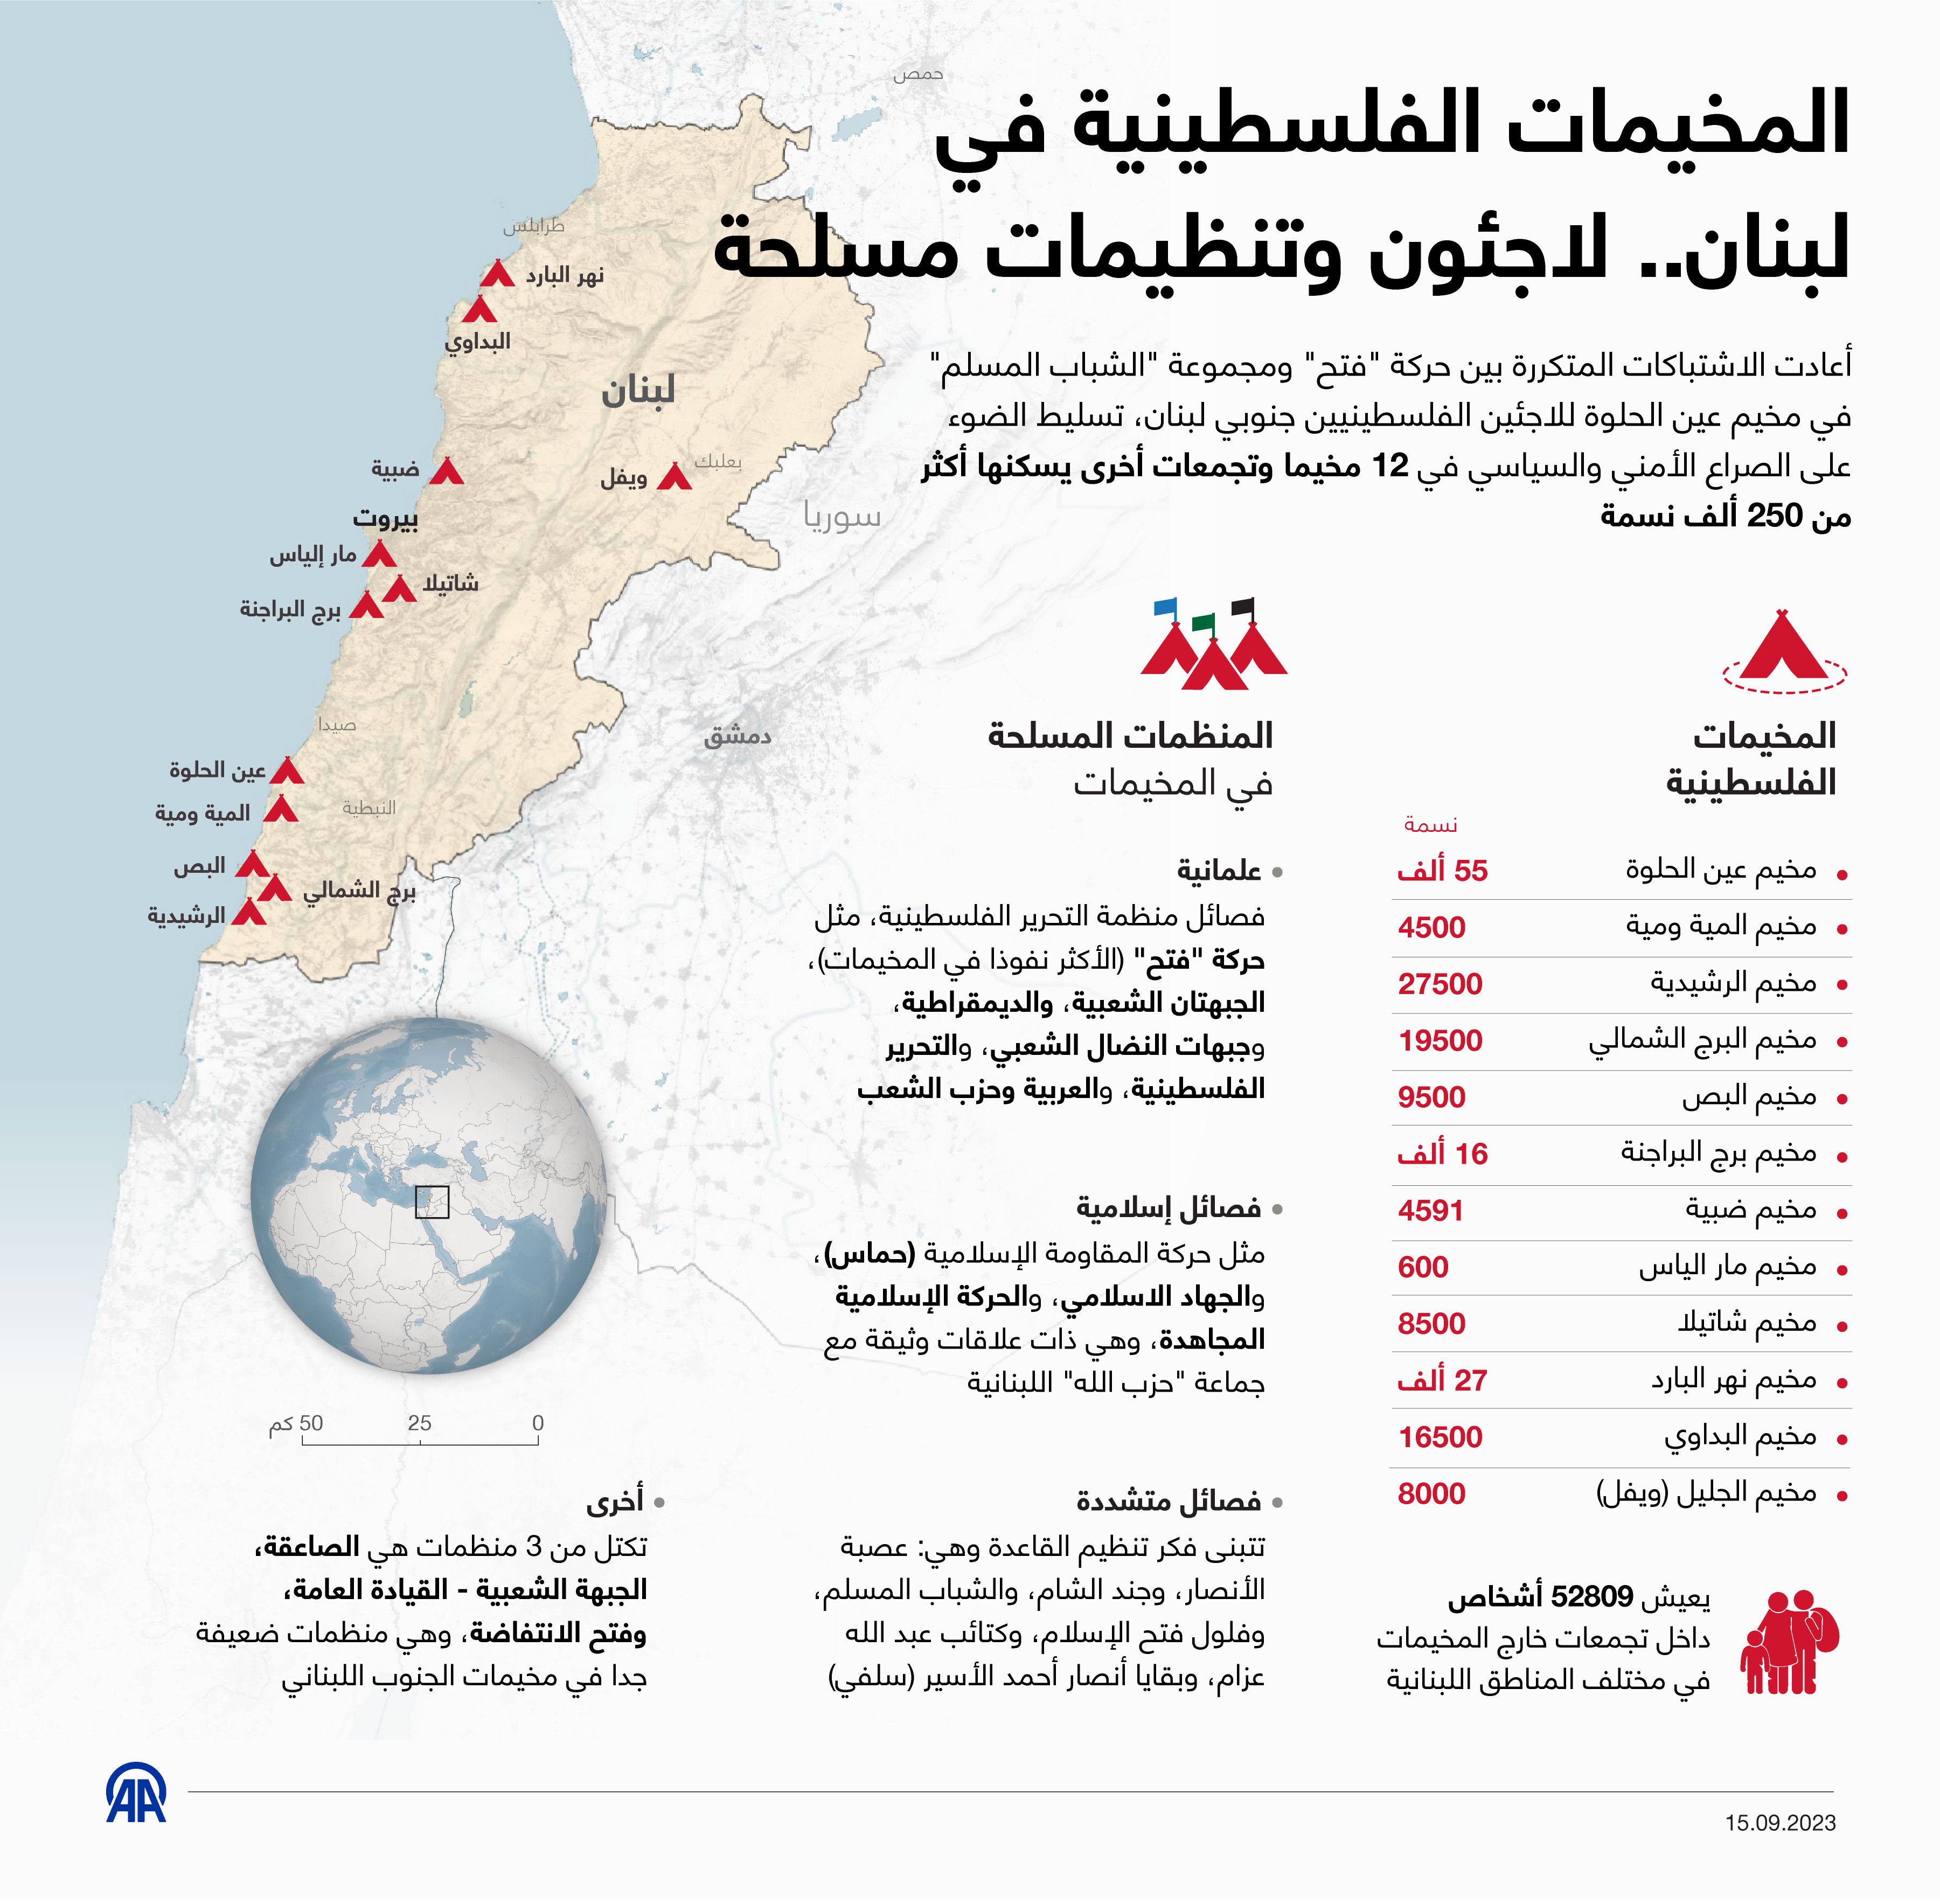 المخيمات الفلسطينية في لبنان.. لاجئون وتنظيمات مسلحة